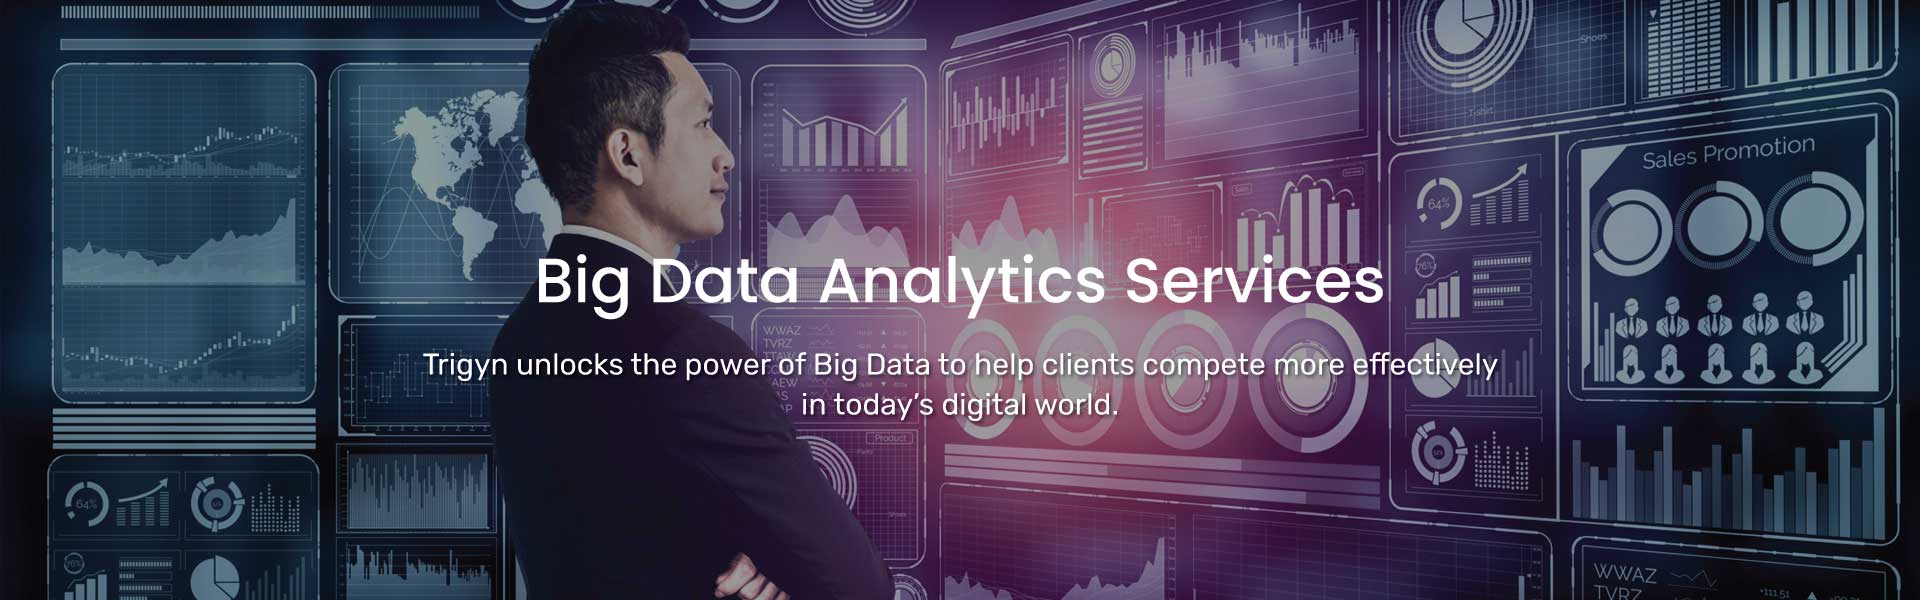 Trigyn's Big Data Analytics Services